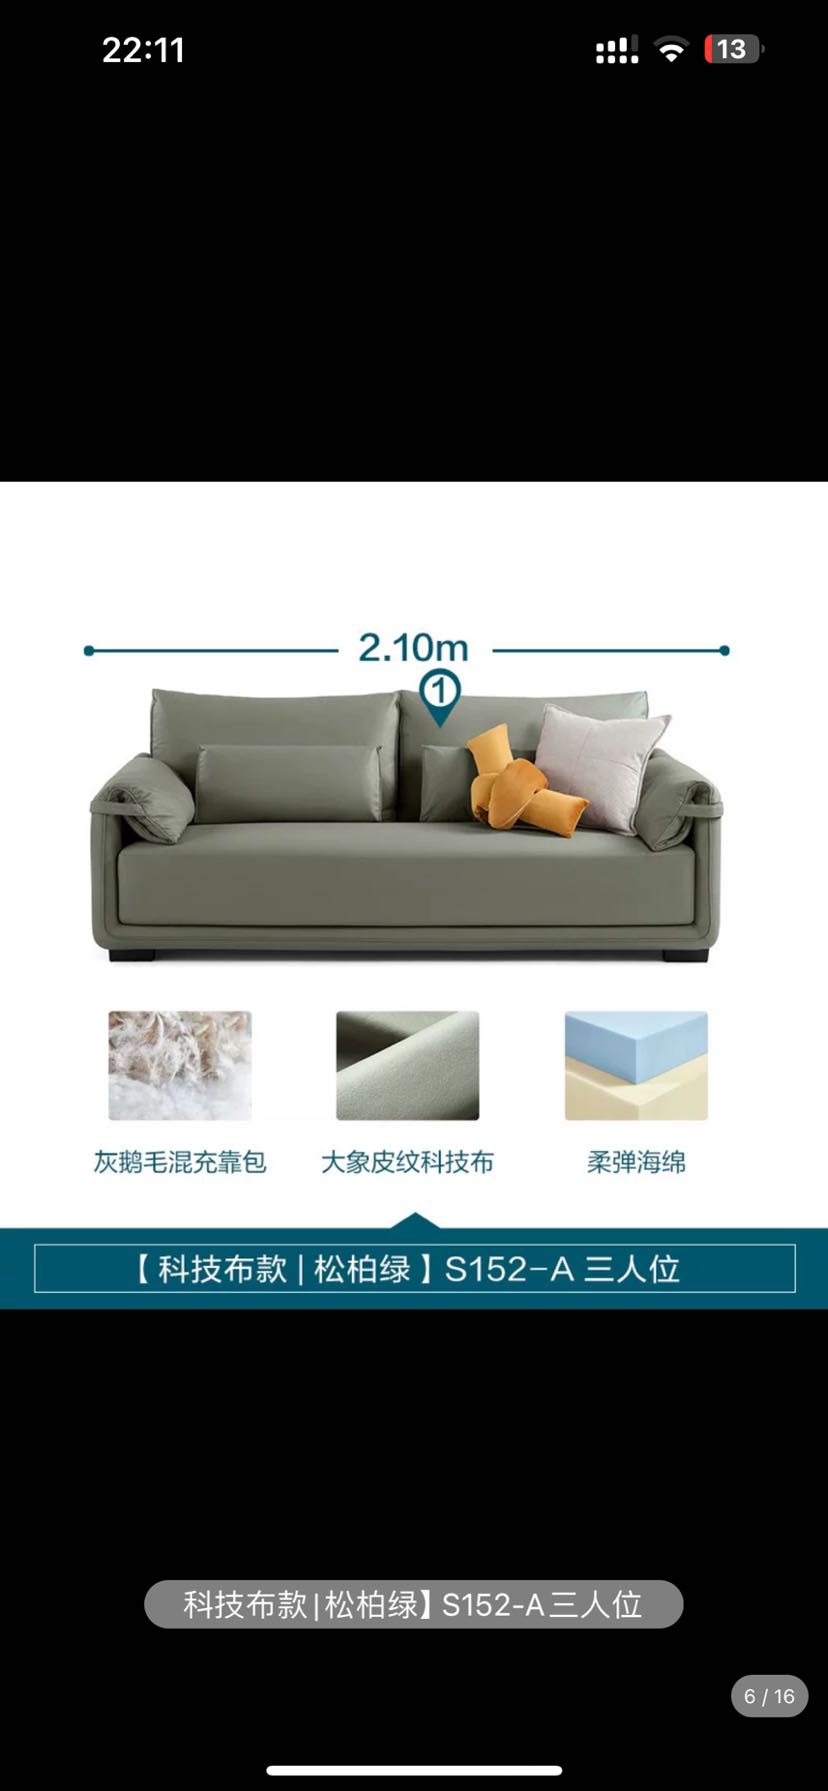 卡伊莲 意式极简布艺沙发小户型科技布沙发客厅家具新款家具S152